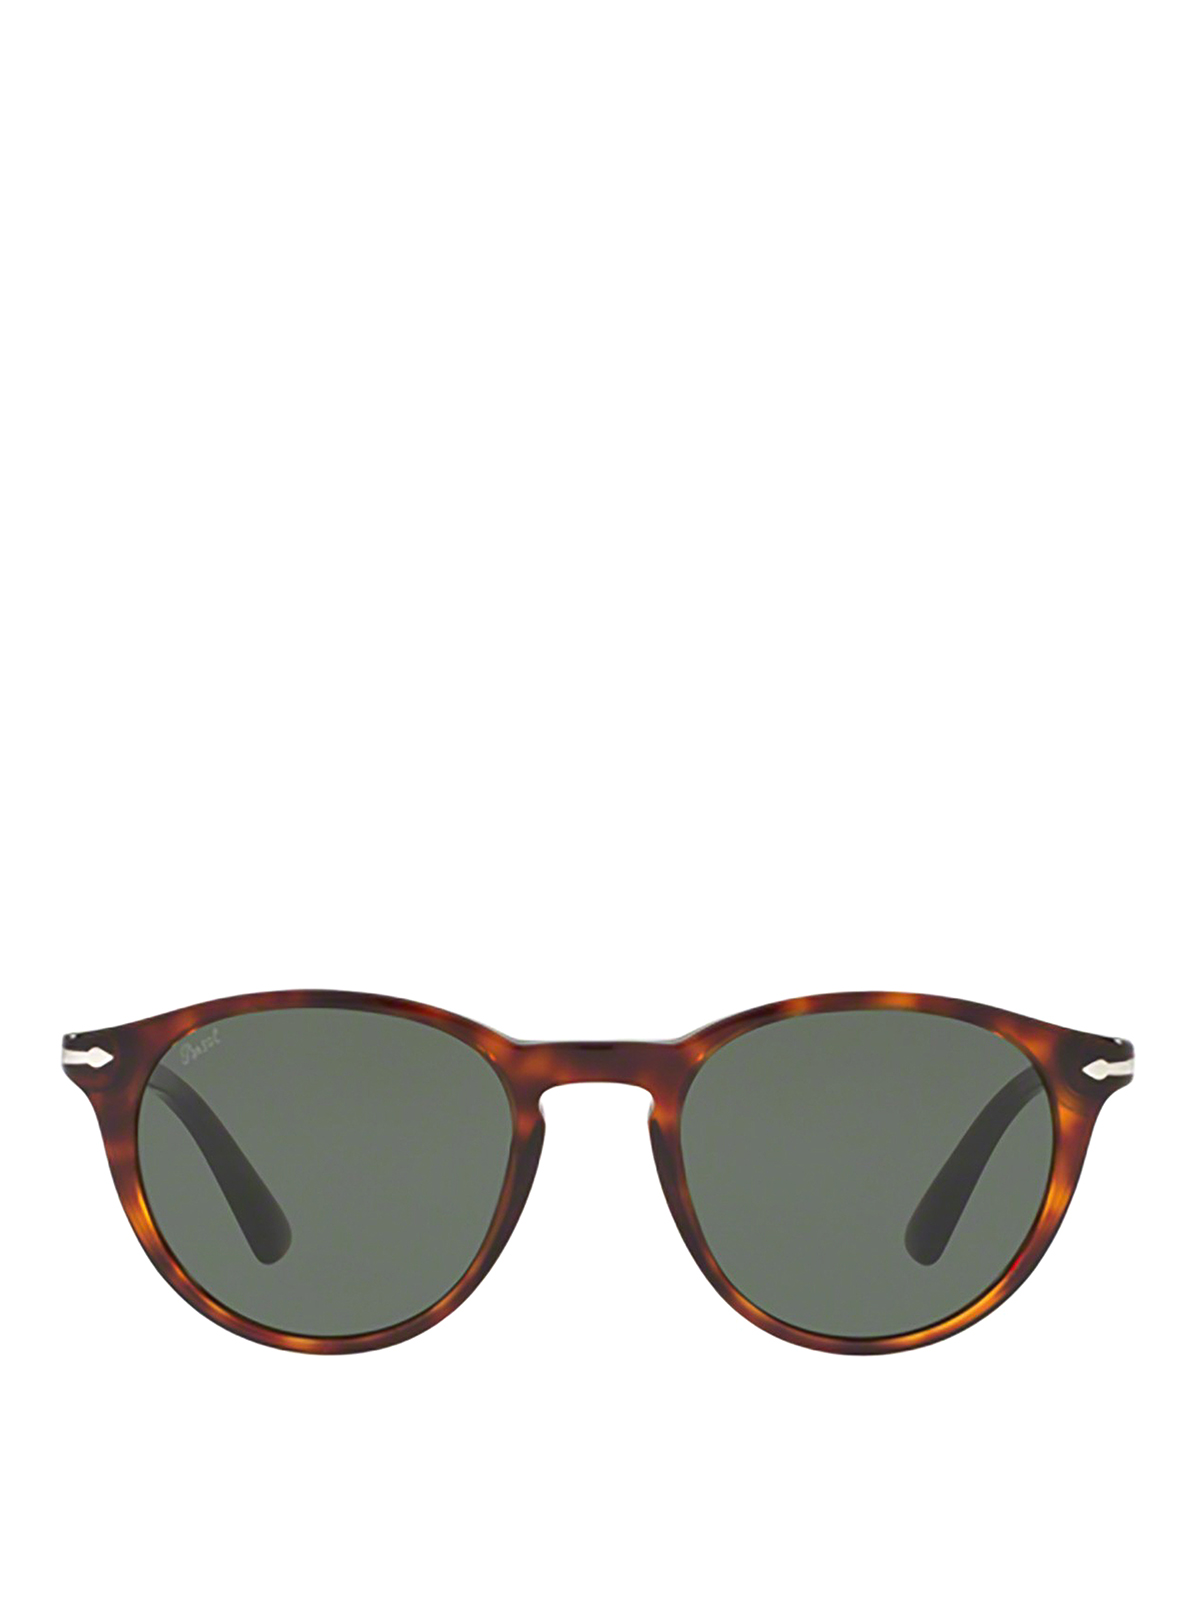 Sunglasses Persol - Galleria '900 sunglasses - PO3152S901531 | iKRIX.com